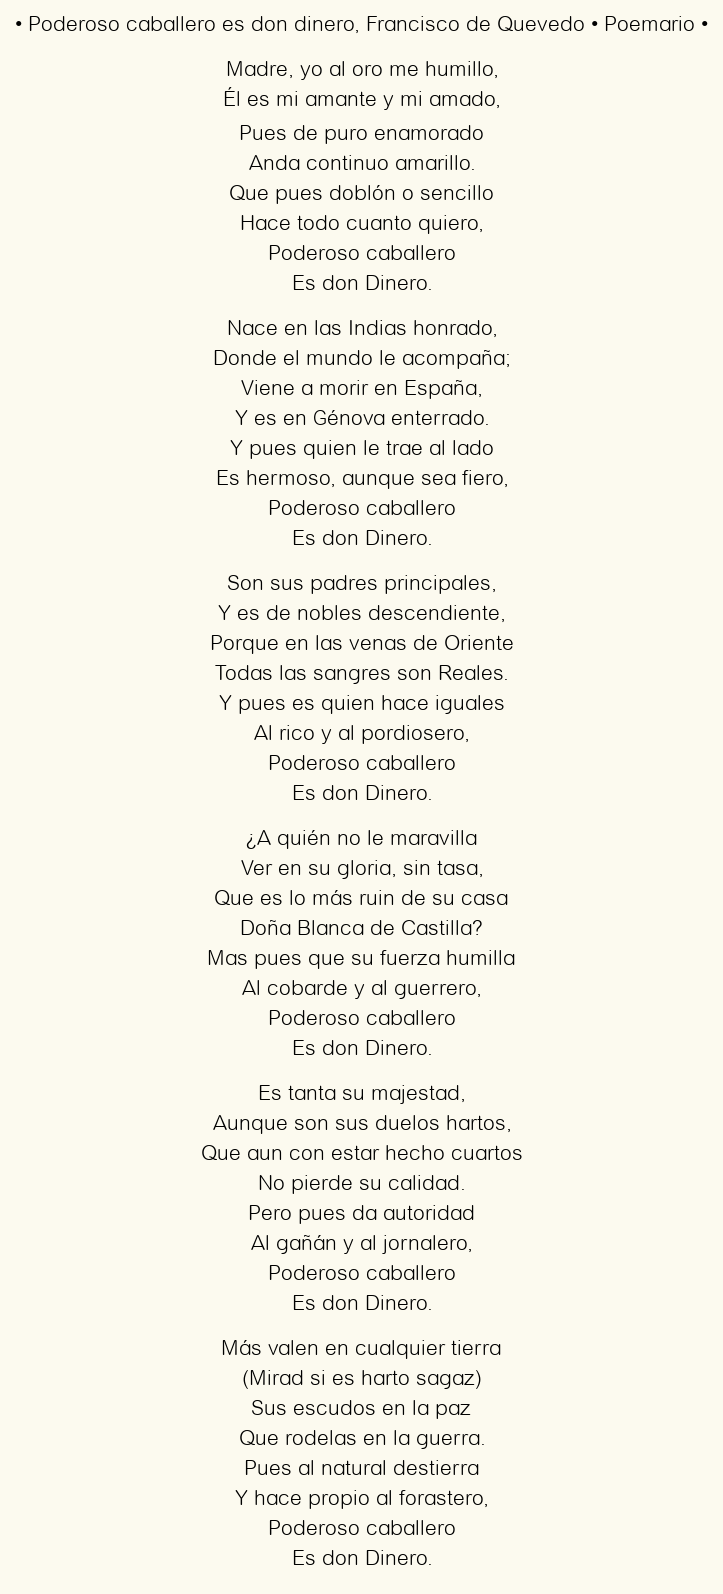 Imagen con el poema Poderoso caballero es don dinero, por Francisco de Quevedo